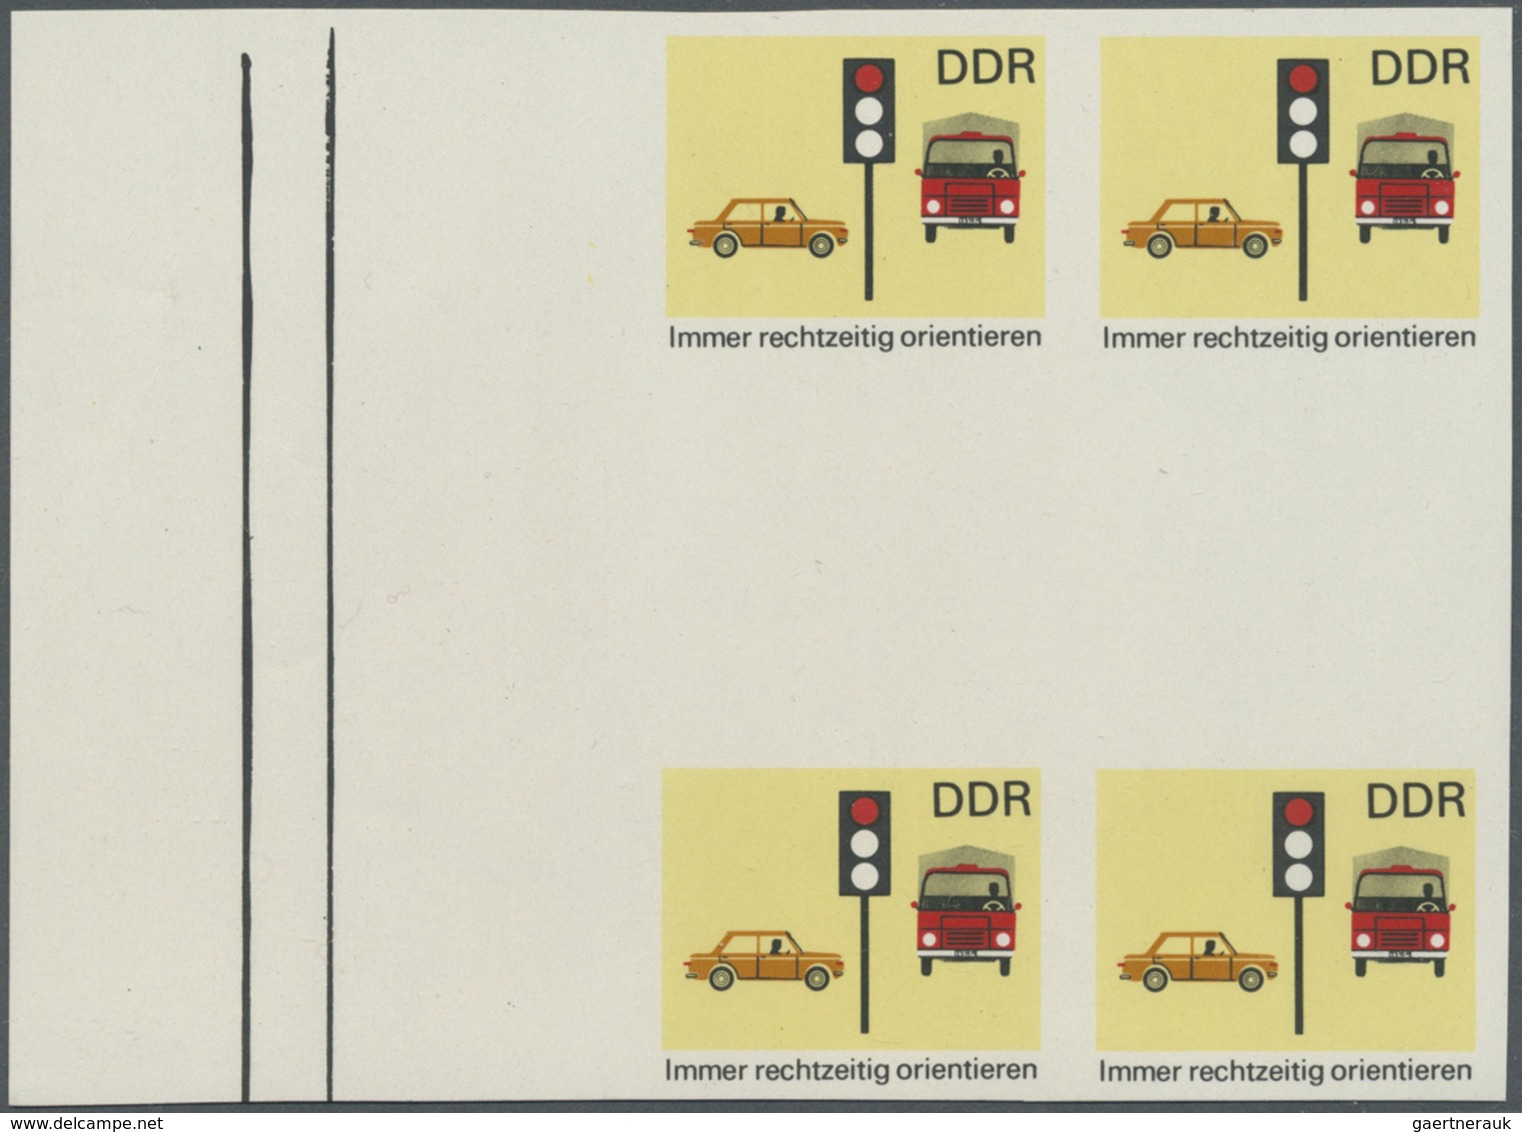 ** DDR: 1969, Sicherheit im Straßenverkehr 10 Pf. 'Immer rechtzeitig orientieren (Ampel)' in 6 verschie